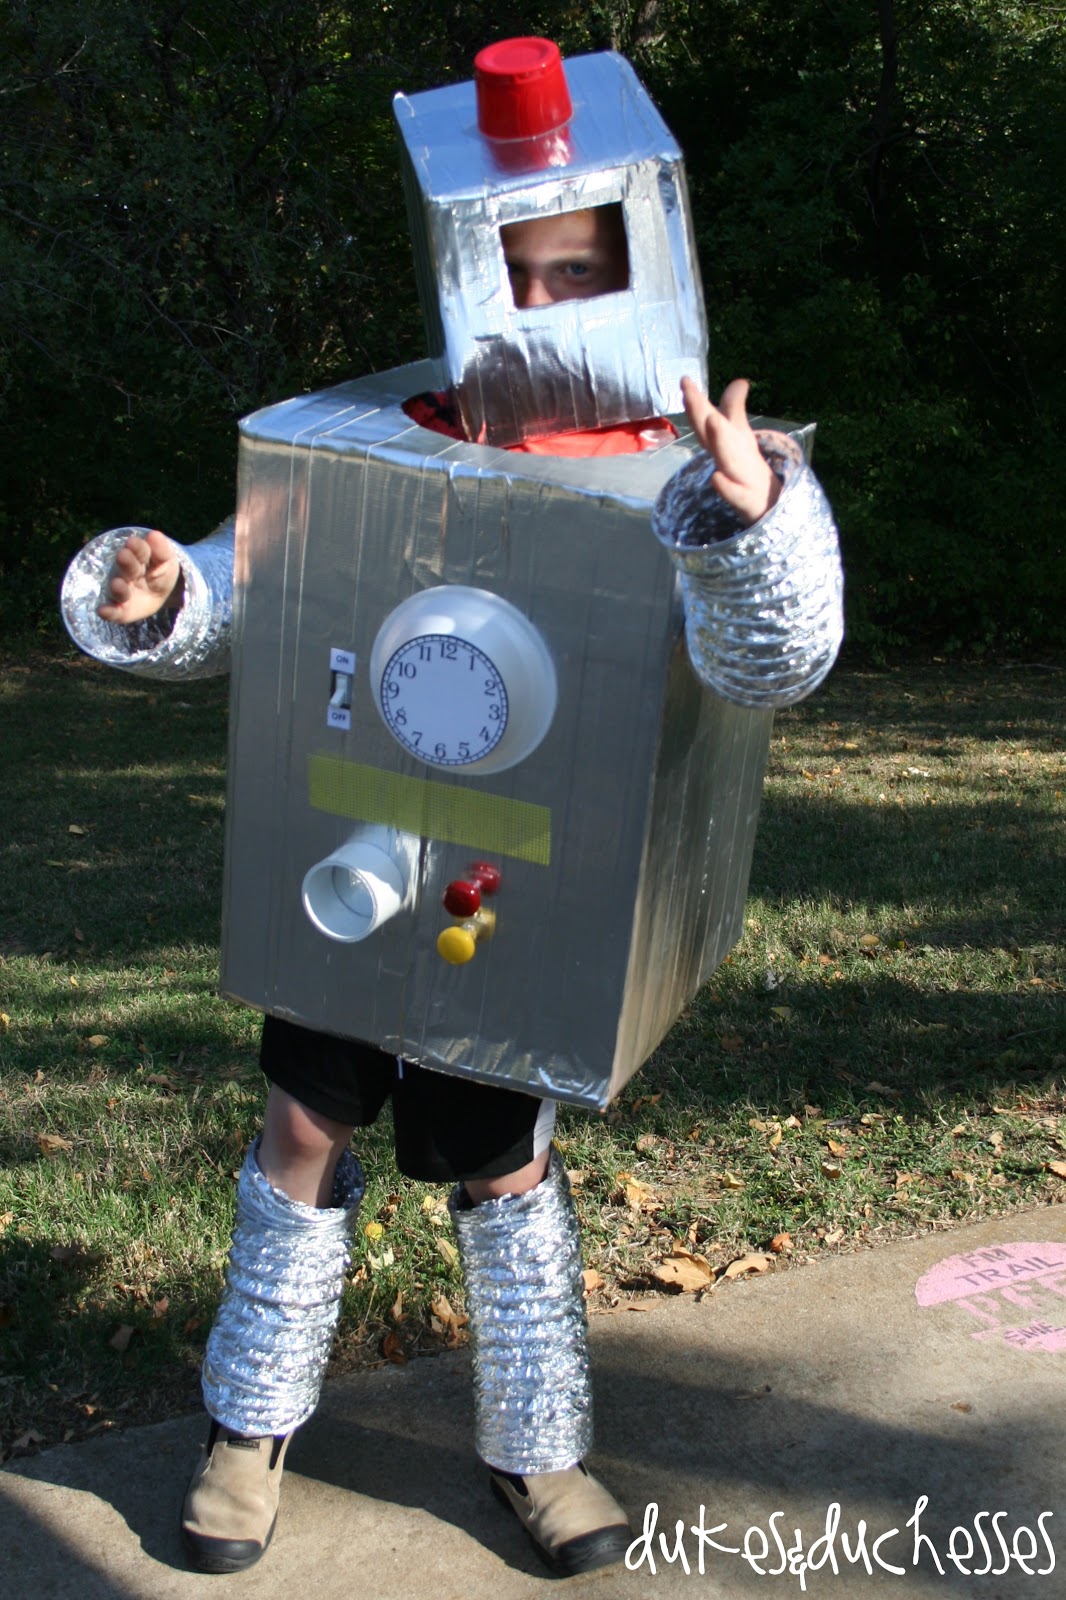 Vend tilbage berømmelse Aftale How to Make a DIY Upcycled Robot Costume out of Cardboard